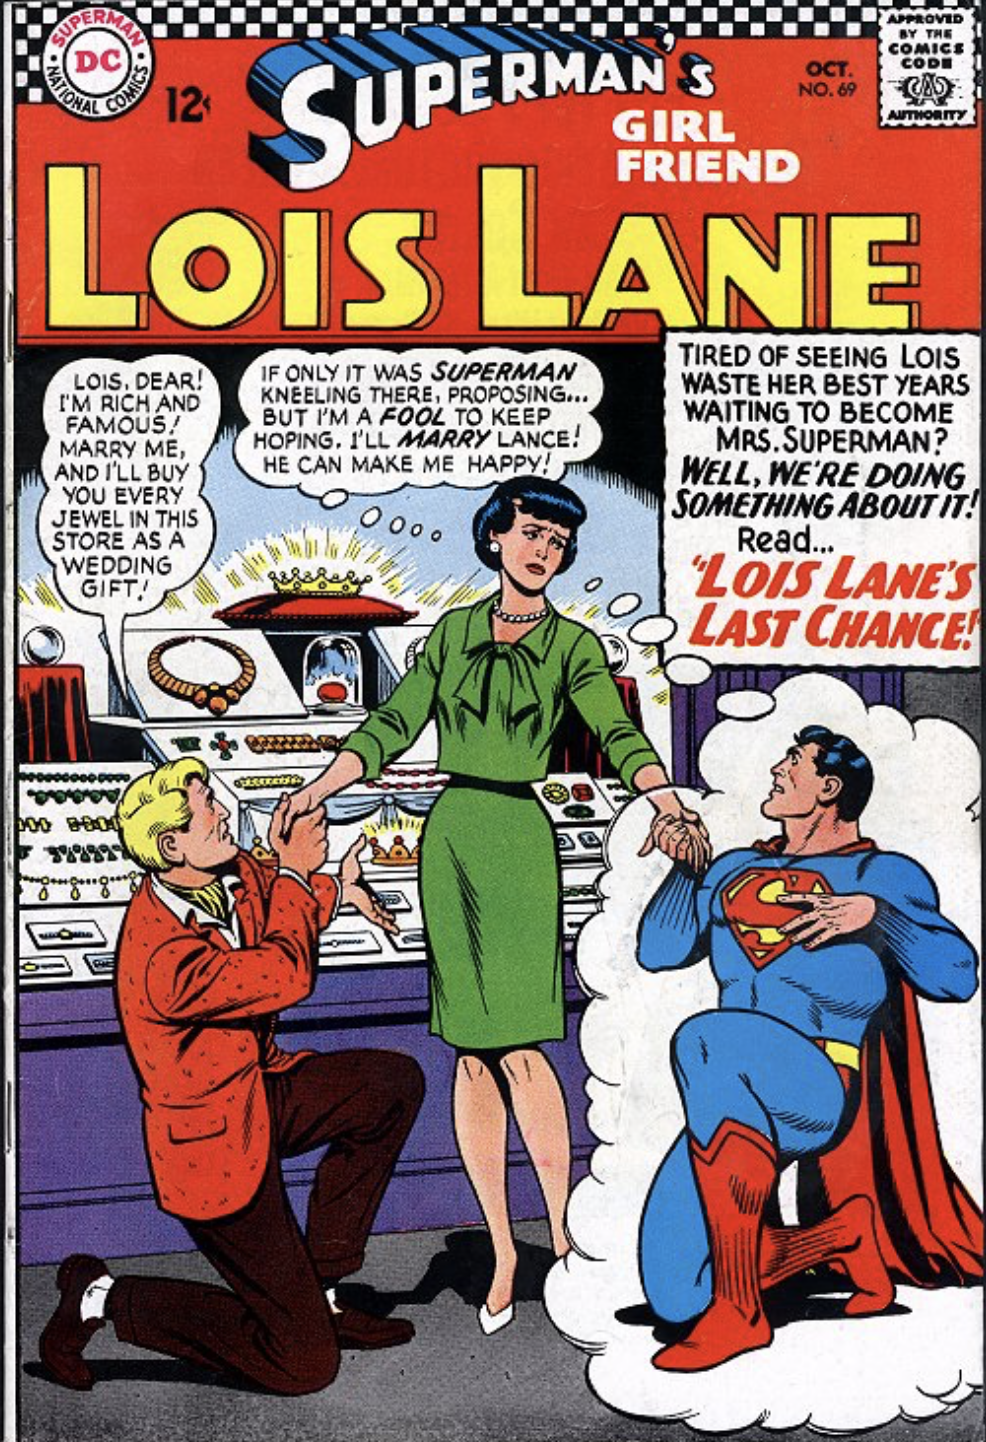 Last Chance Lois (Lois Lane 69)